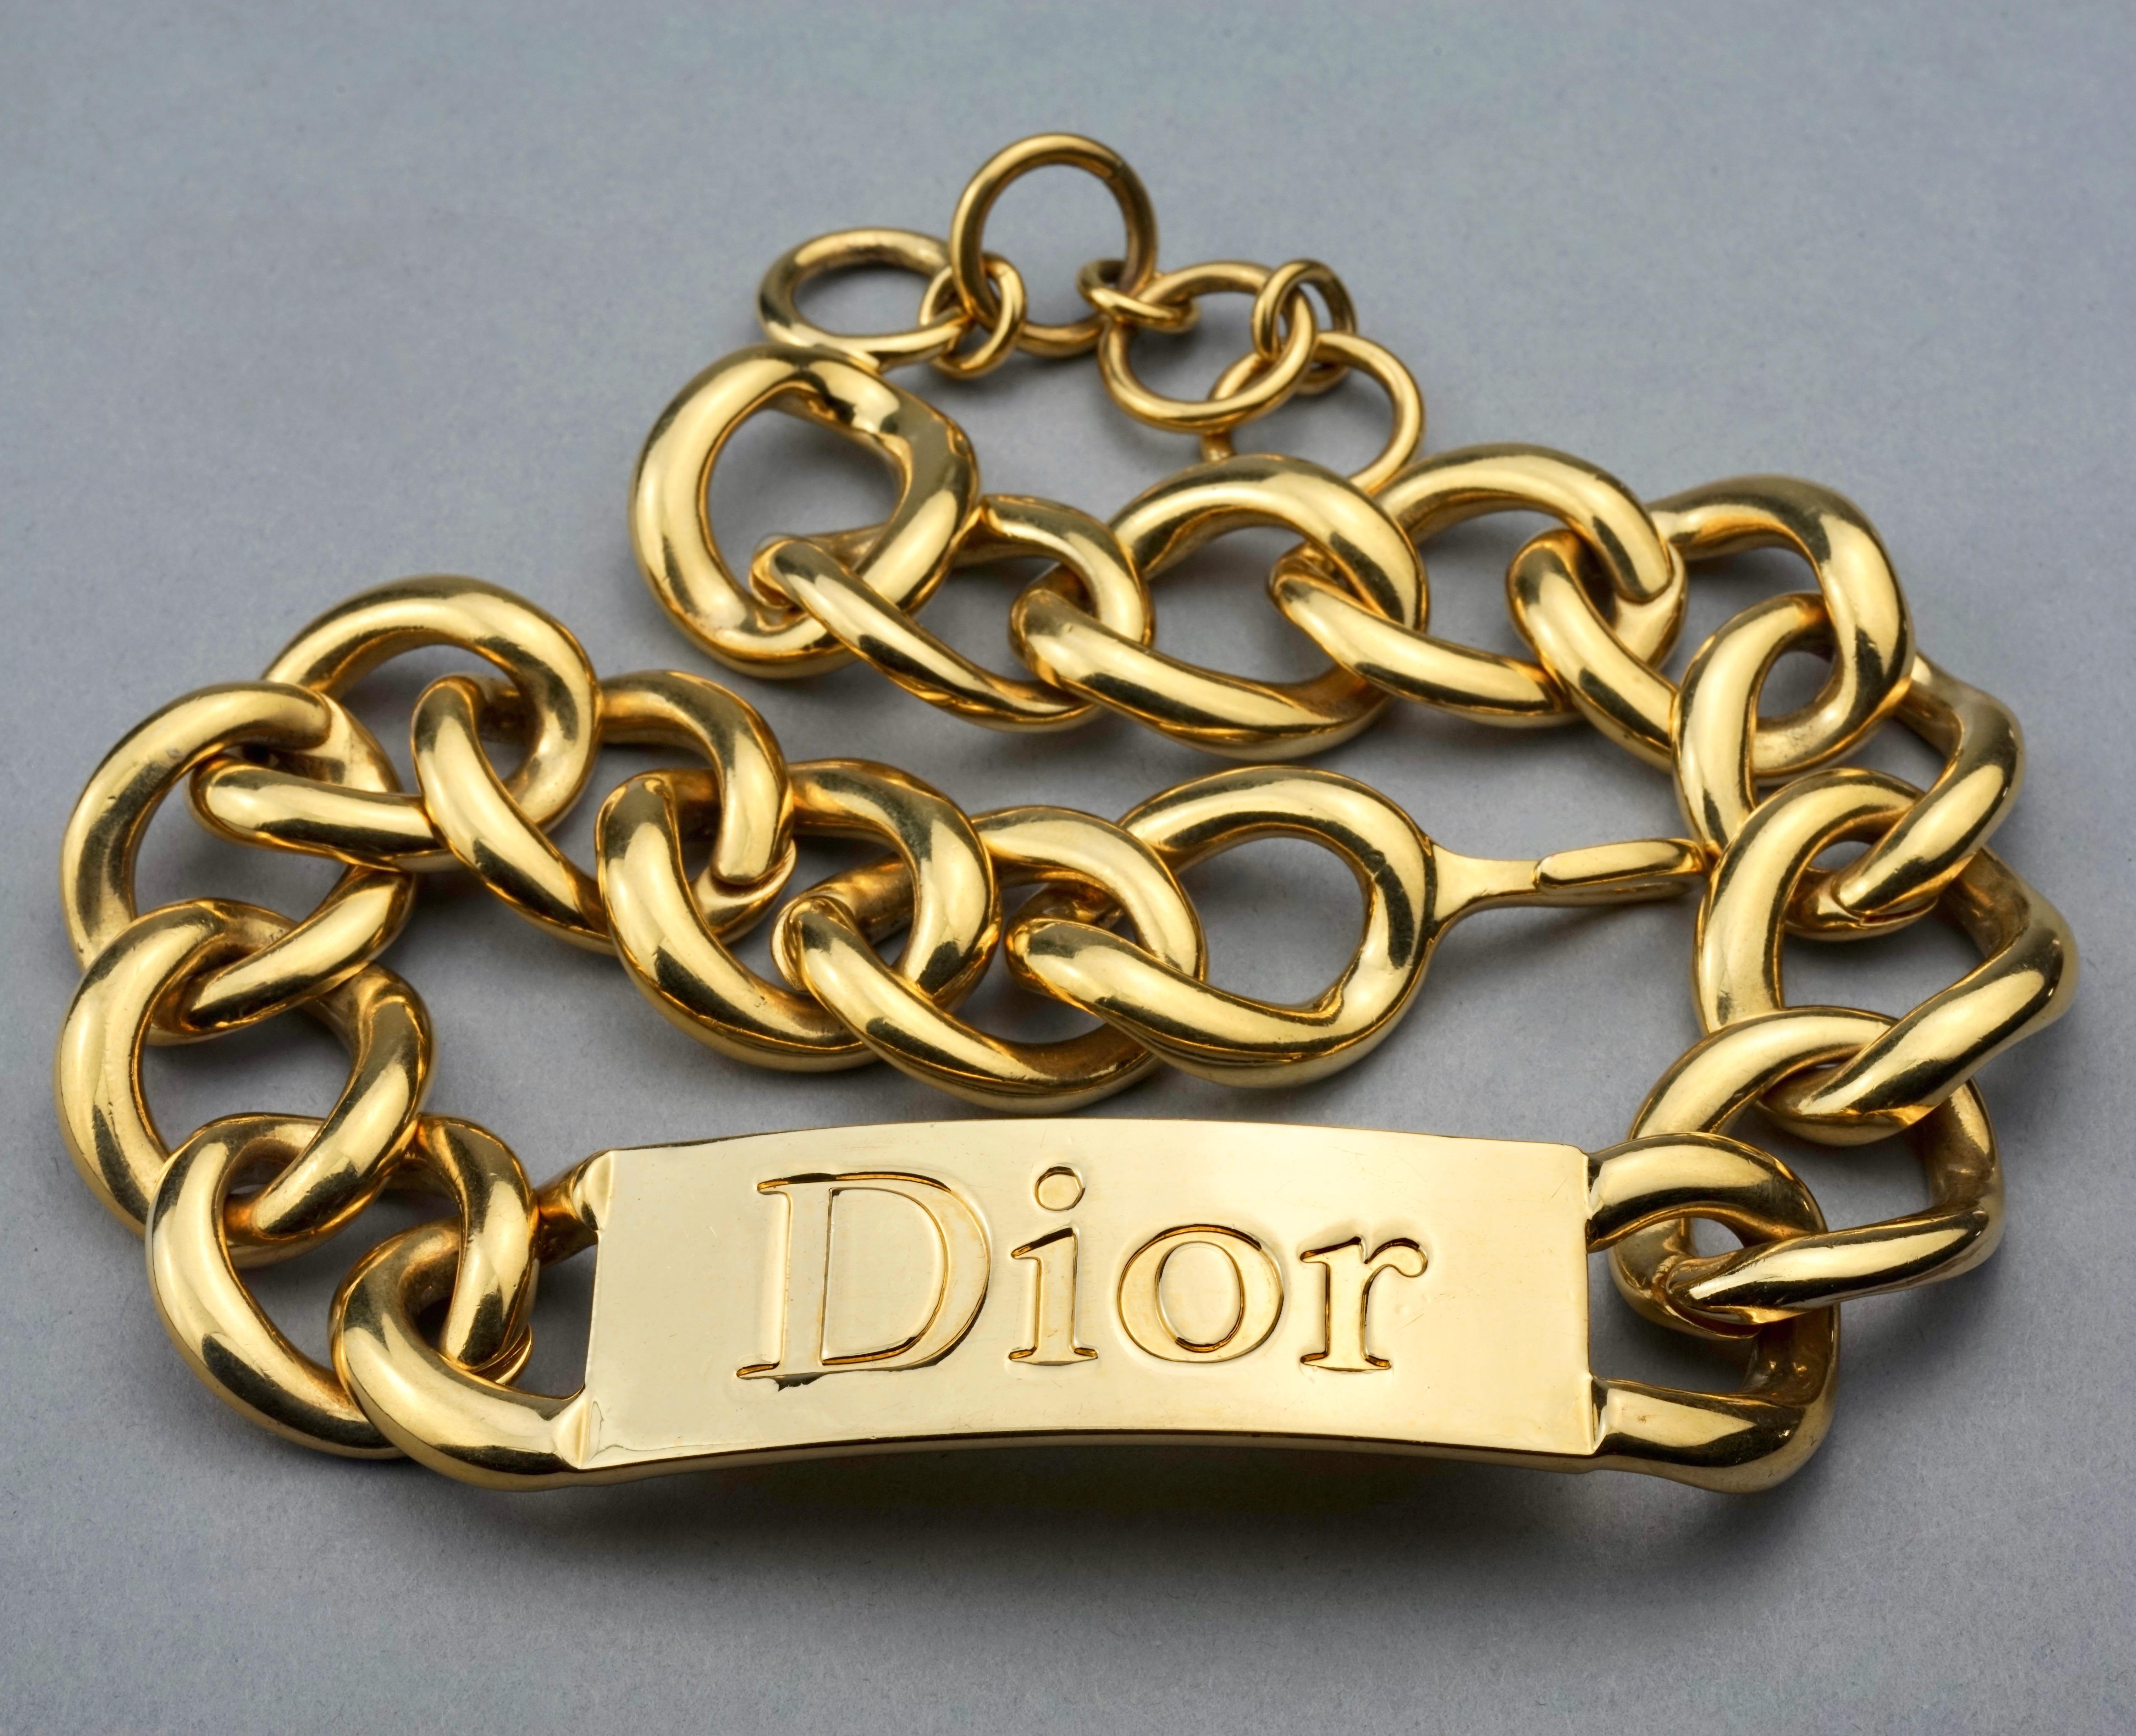 dior name necklace